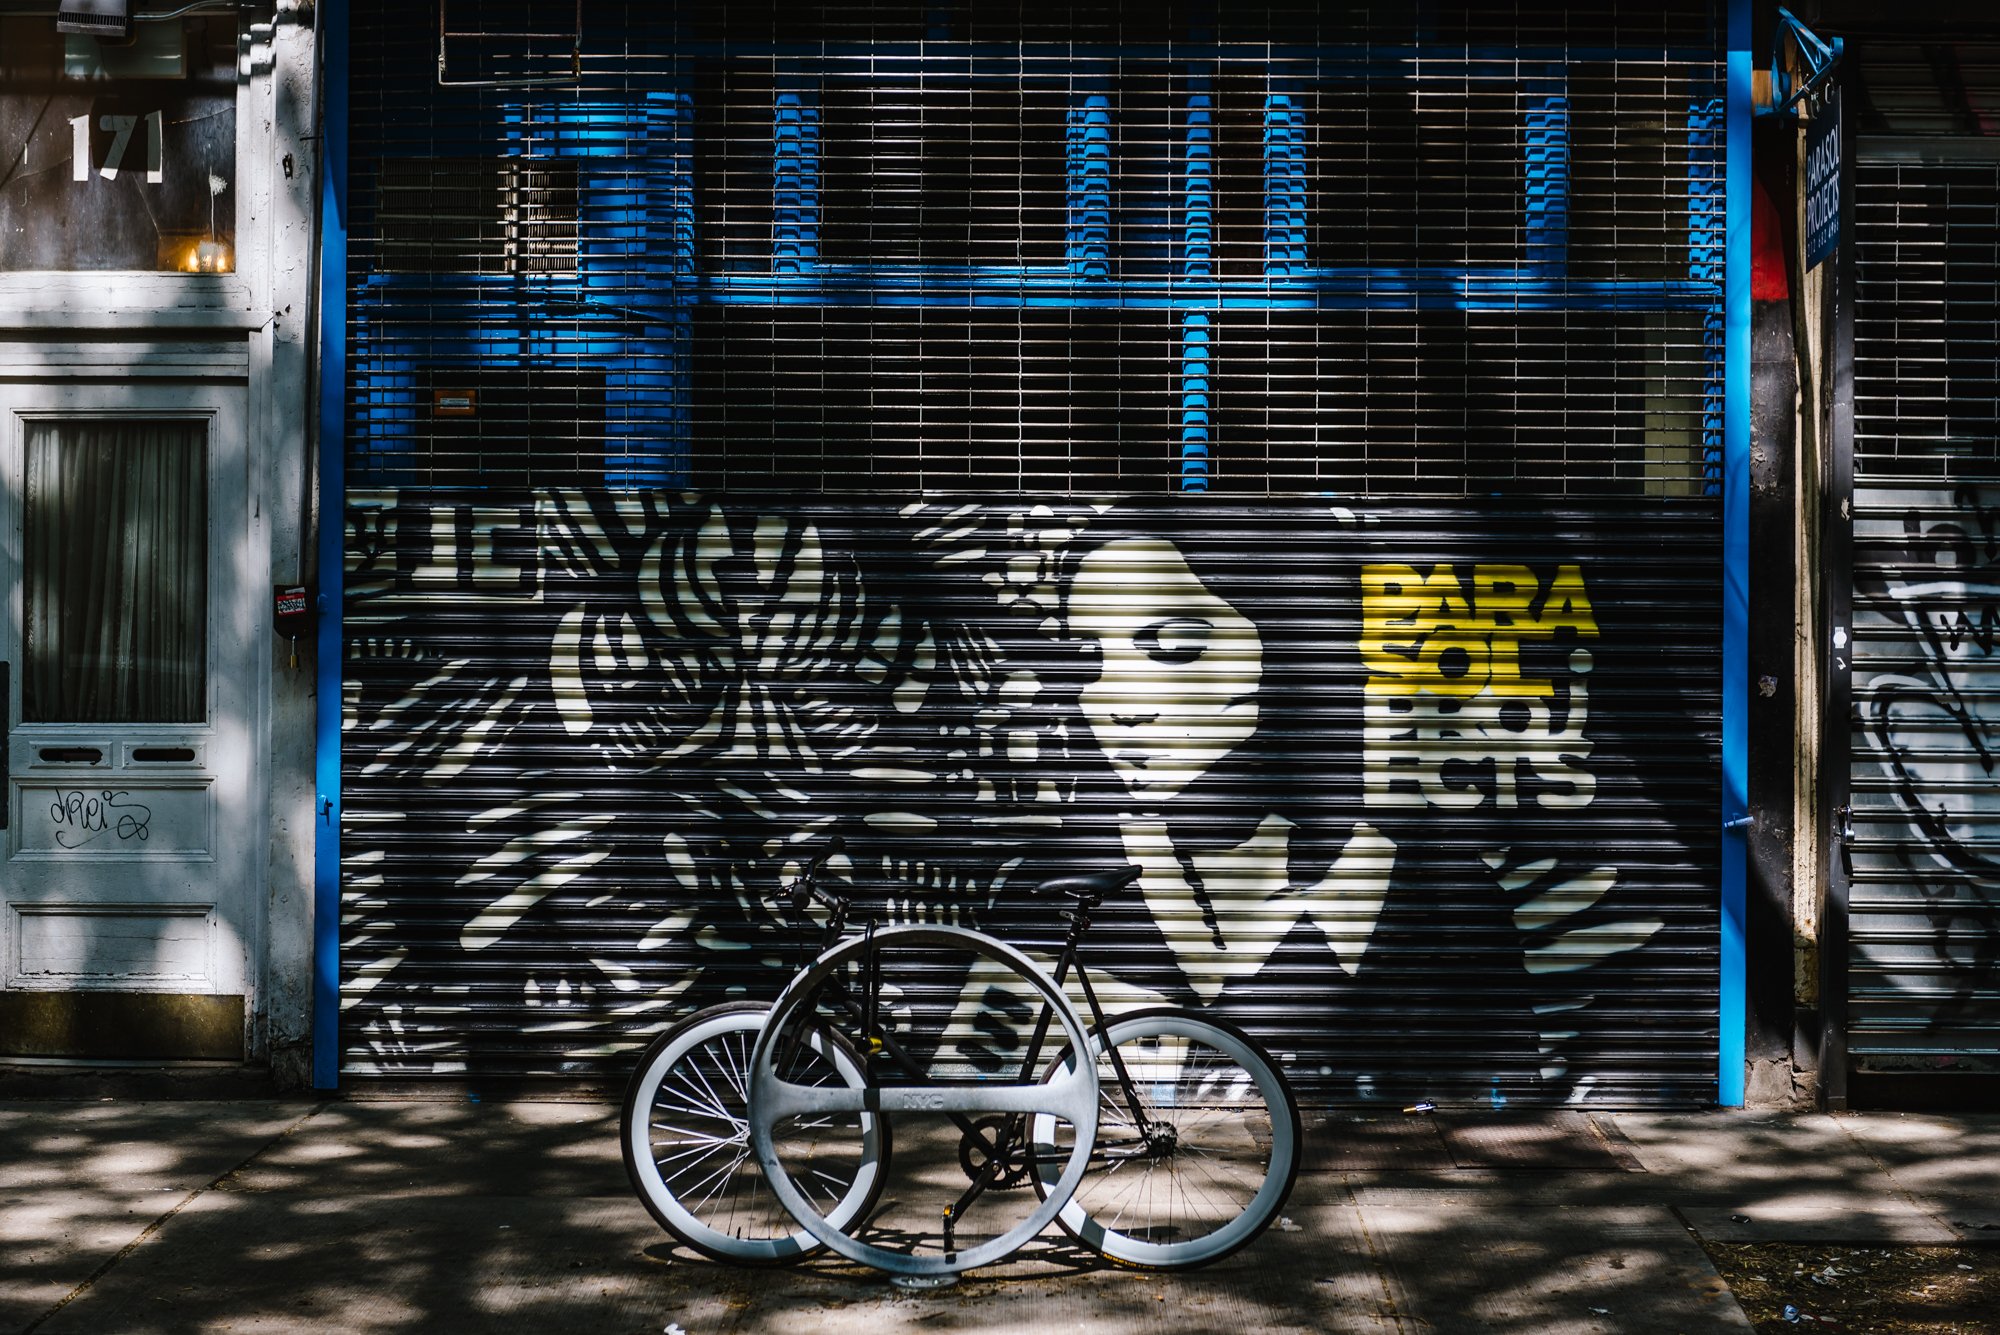 Nolita-neighborhood-photography-11.jpg